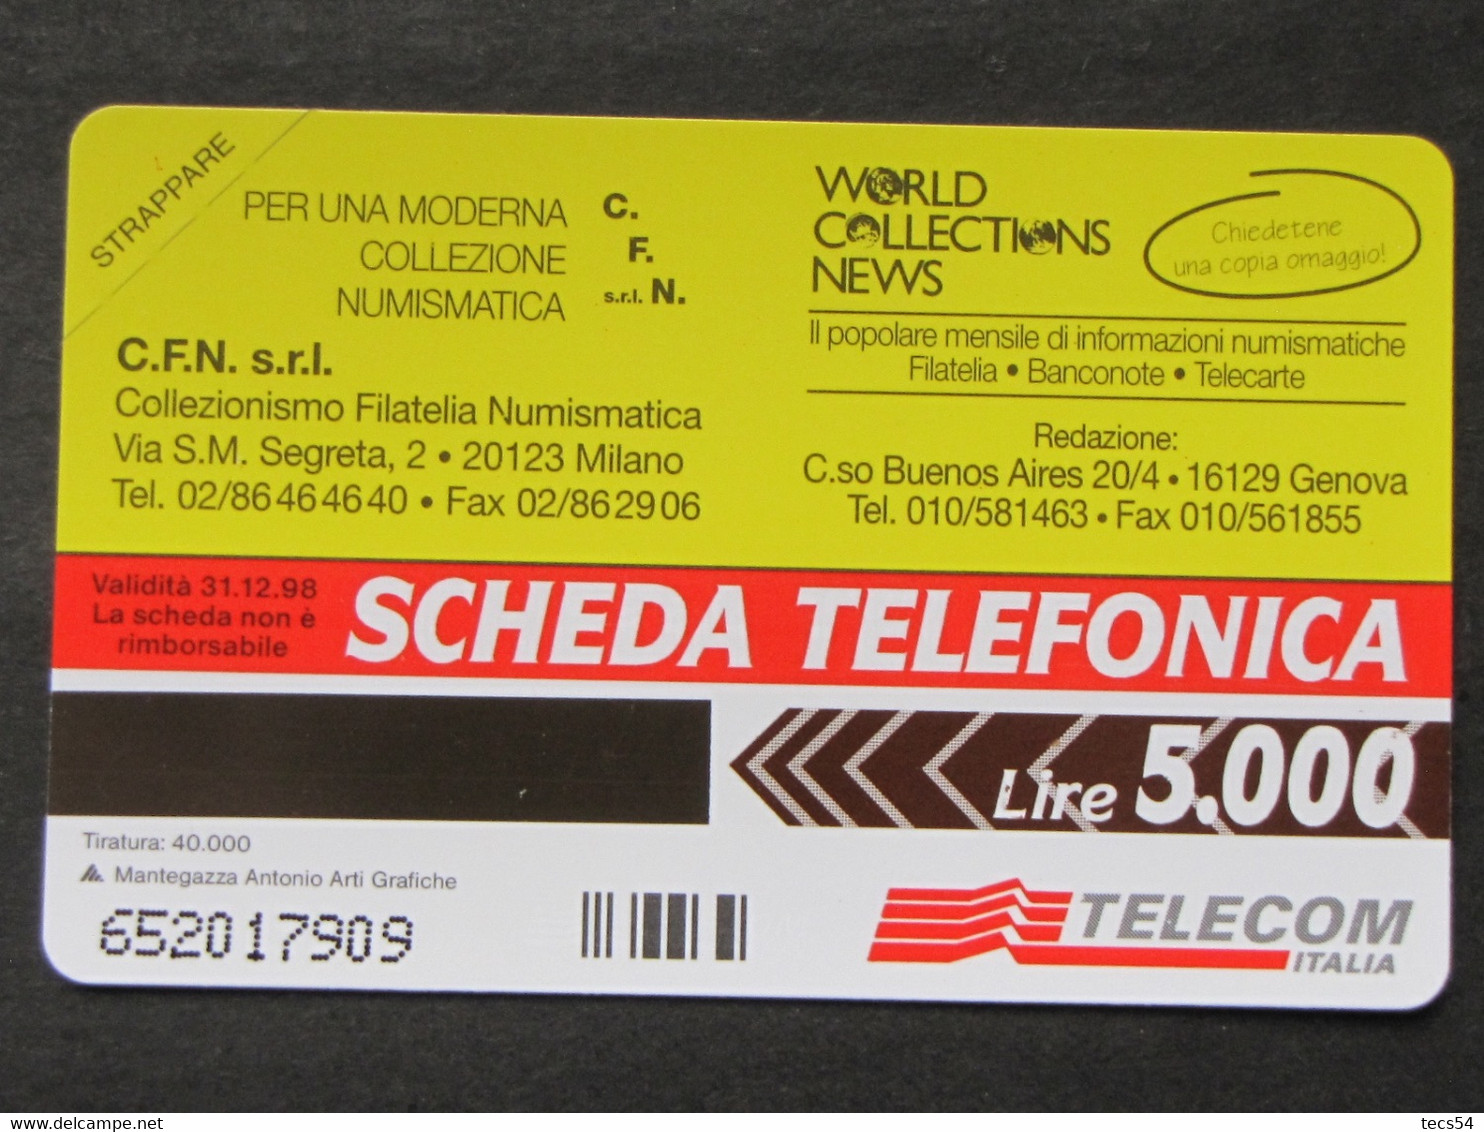 ITALIA TELECOM - 3428 C&C 335 GOLDEN - PRIVATE PUBBLICHE - CFN - NUOVA MINT - Private-Omaggi